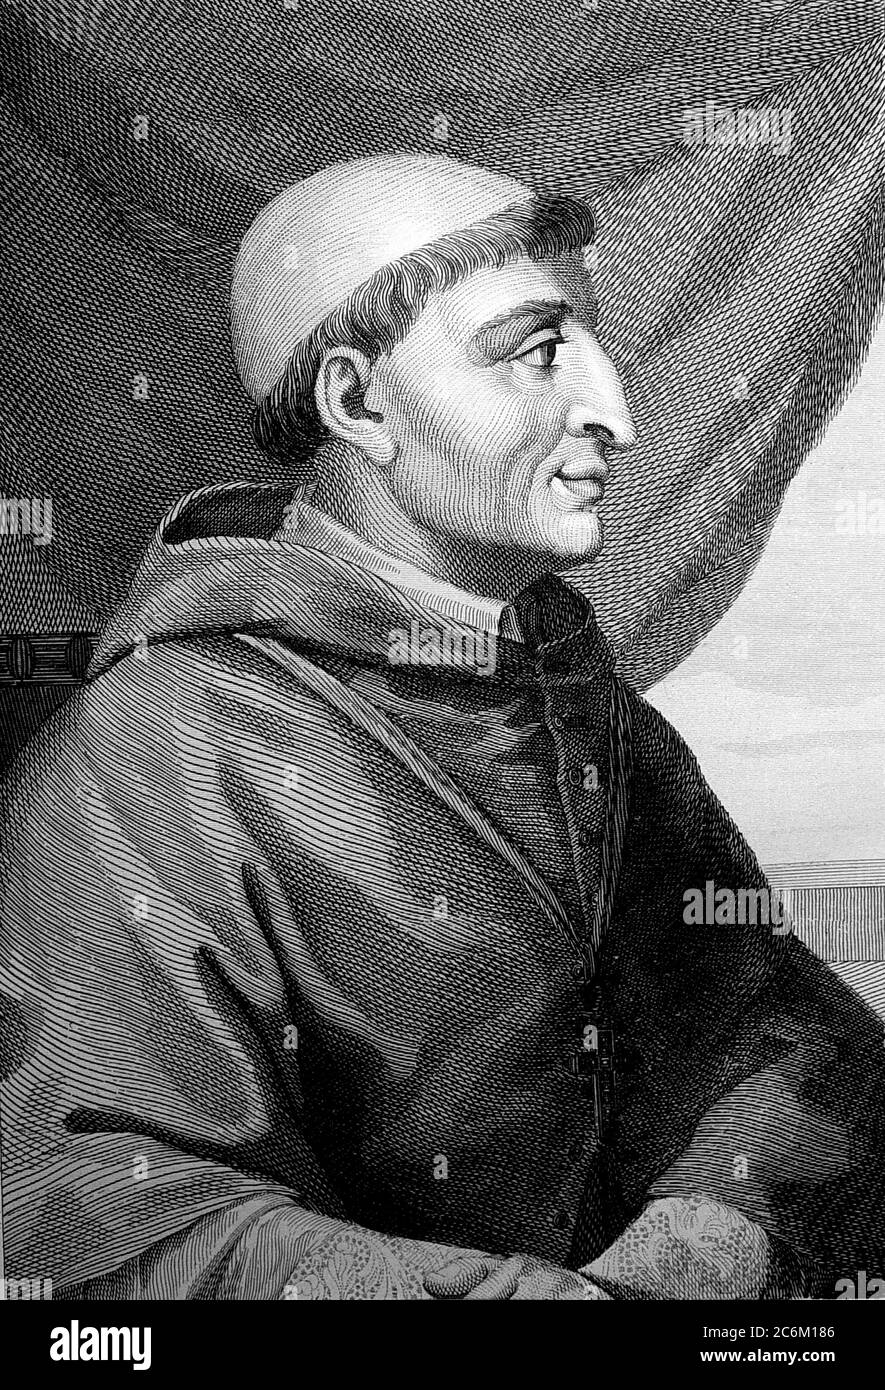 1510 c, SPAIN : The spanish Cardinal FRANCISCO JIMENEZ ( XIMENES ) DE CISNEROS ( 1436 - 1517 ), Roman Catholic Statesman  , Regent of Spain and Grand Inquisitor . Portrait engraved  and pubblished in book Las Glorias Nacionales ( Spain, 1852 ) . - RELIGIONE CATTOLICA - ARCIVESCOVO - CARDINALE - CATHOLIC RELIGION - CLERICALI - CLERICALE - ALTO PRELATO - VATICANO - VATICAN - SPAGNA - SANTA INQUISIZIONE - INQUISITORE - FRANCESCANO - ORDINE DEI FRANCESCANI - illustrazione - illustration - incisione - POLITICO- POLITICIAN - POLITICA - POLITIC - Reggente del Regno di Castiglia - Castilla --- Archivi Stock Photo